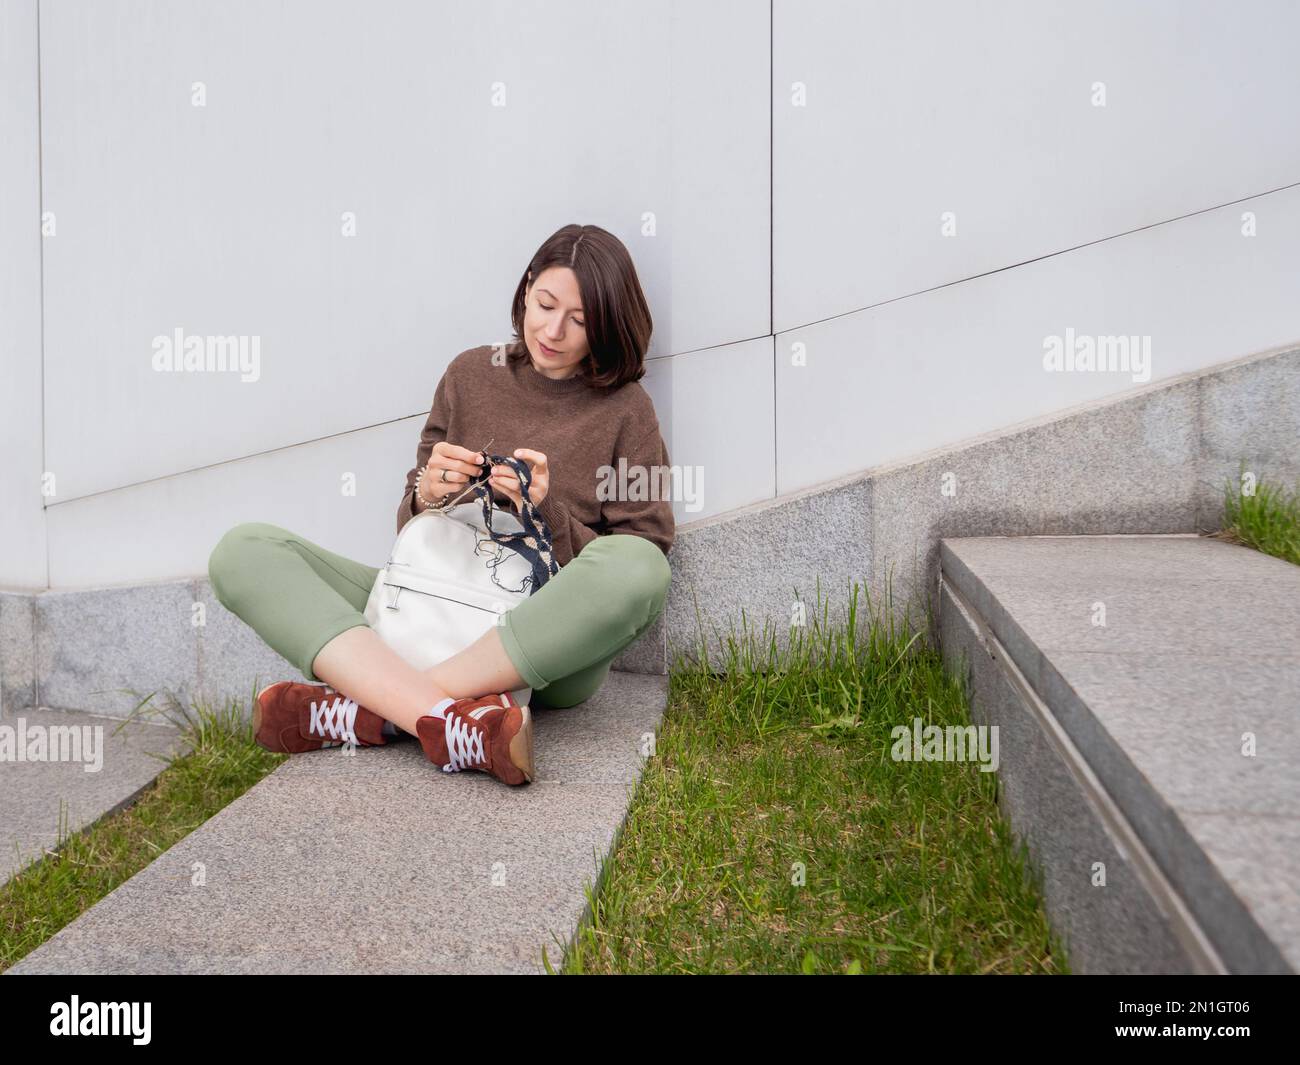 La mujer está tejiendo al aire libre. Ocio tranquilo de la hembra en parque urbano. Pasatiempo anti-estrés. Foto de stock